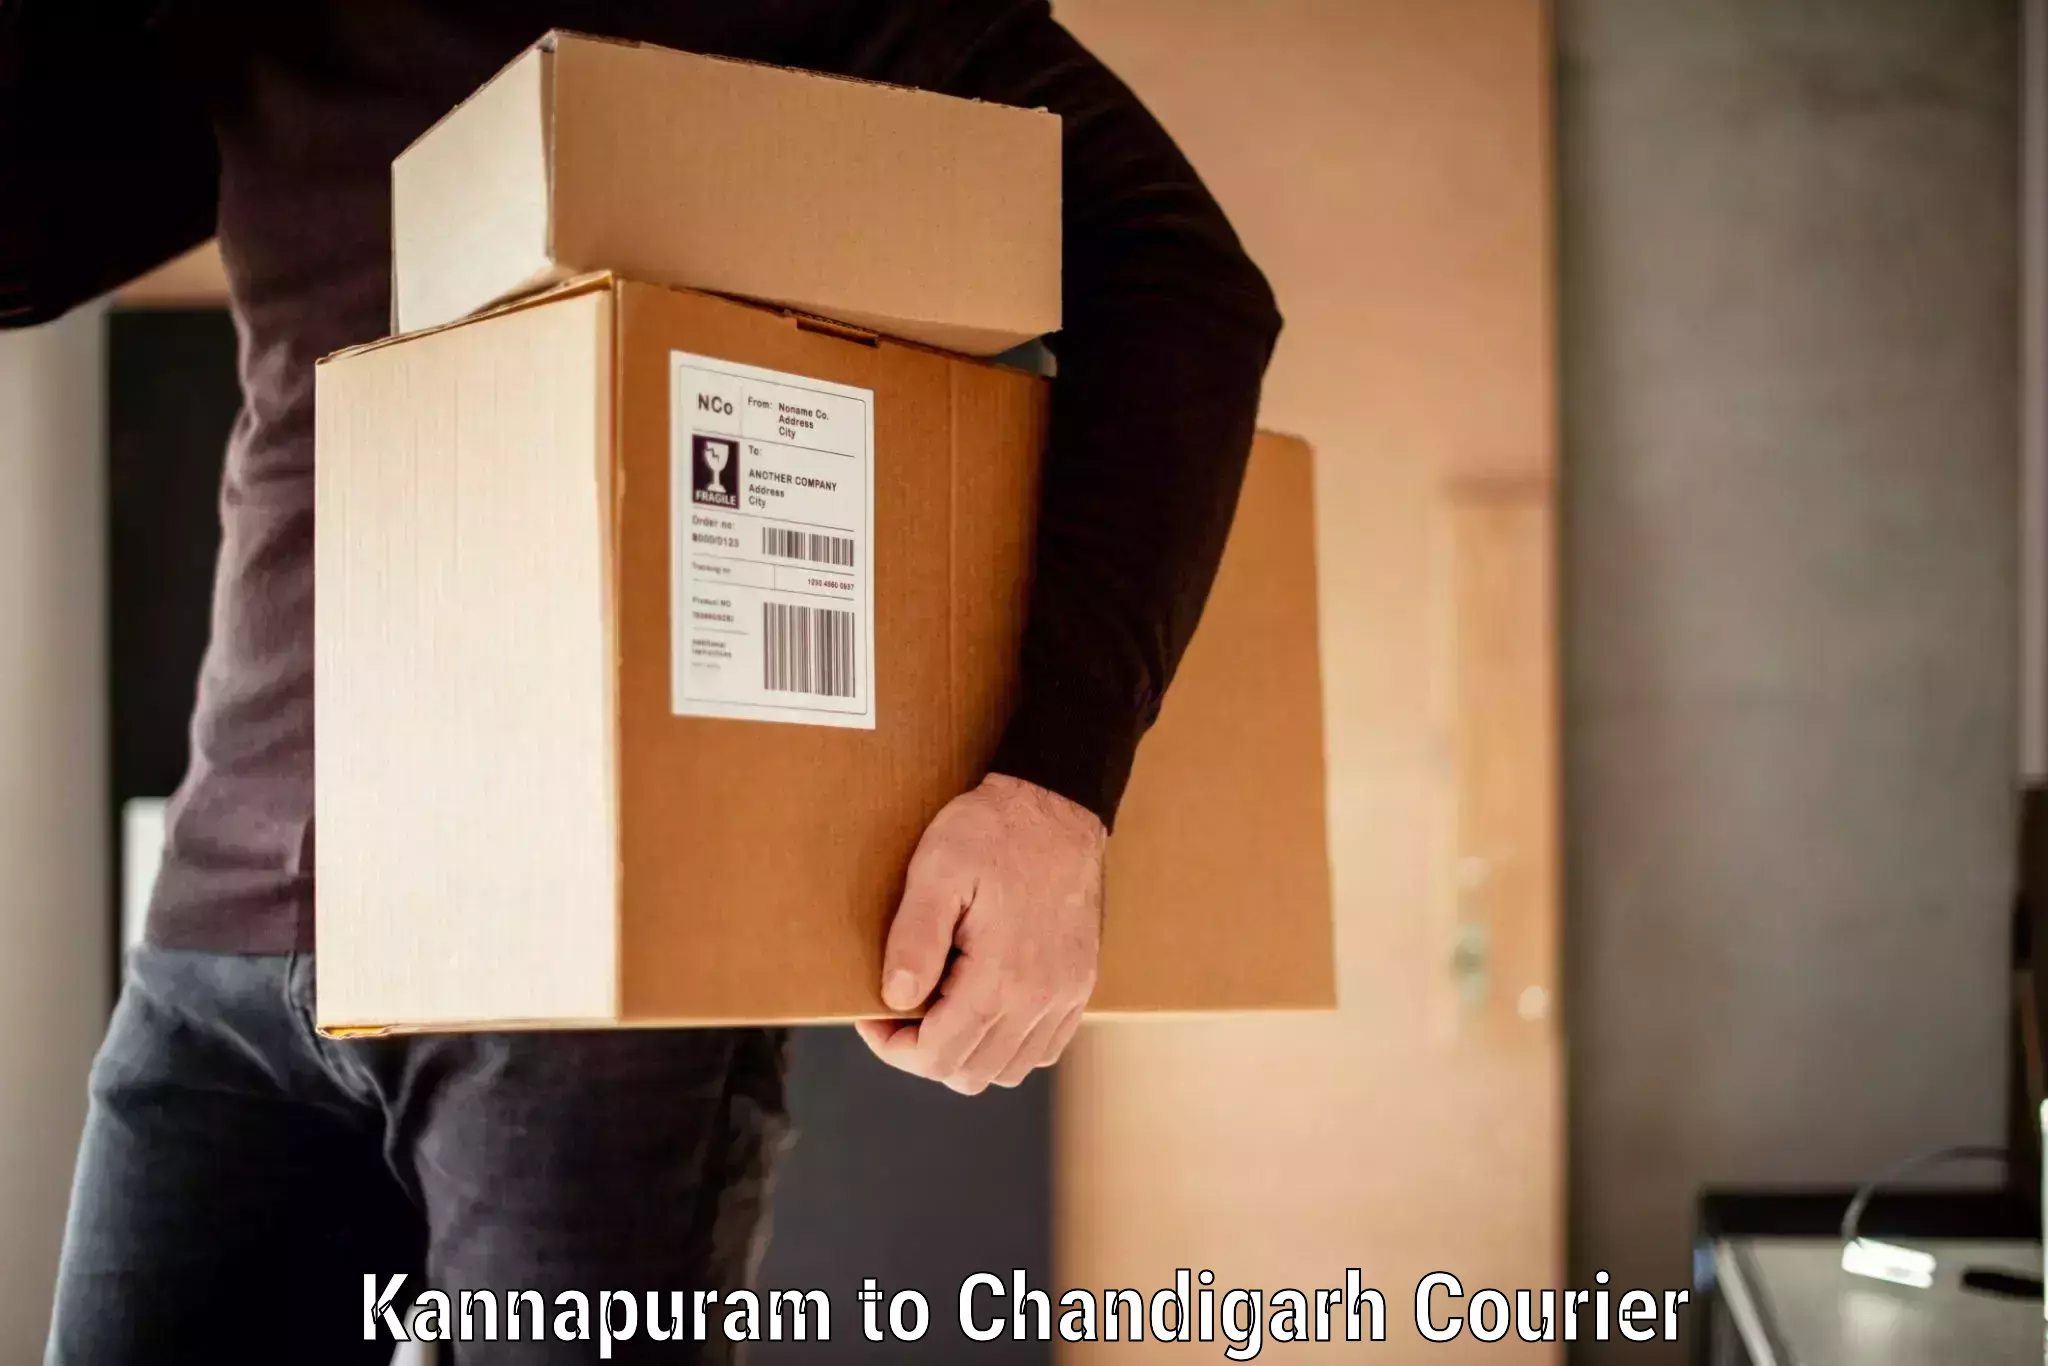 Baggage transport quote Kannapuram to Chandigarh